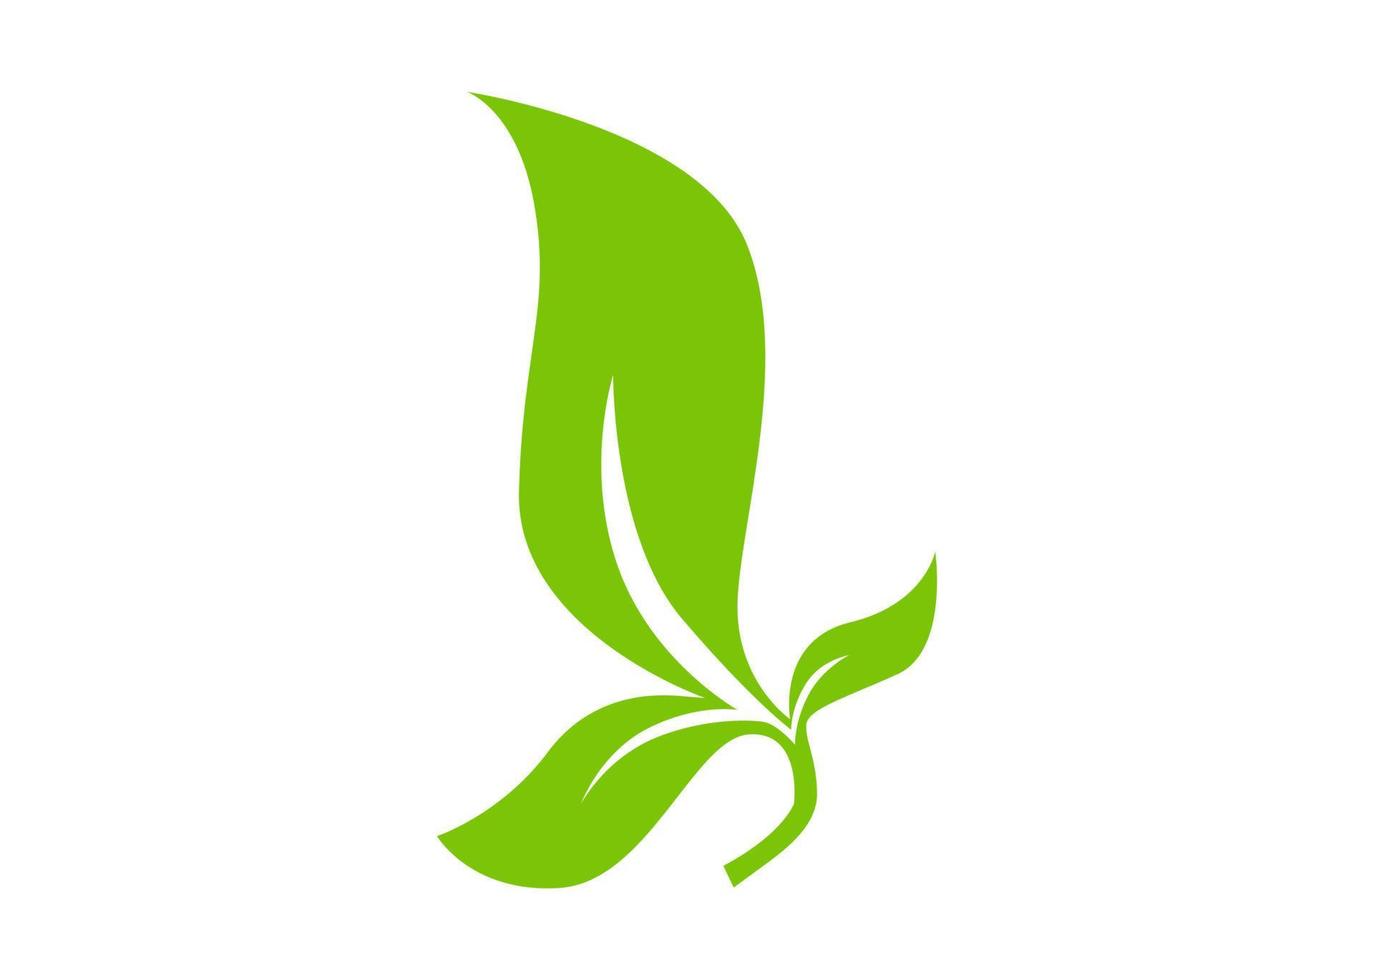 leaf shape icon or symbol design vector